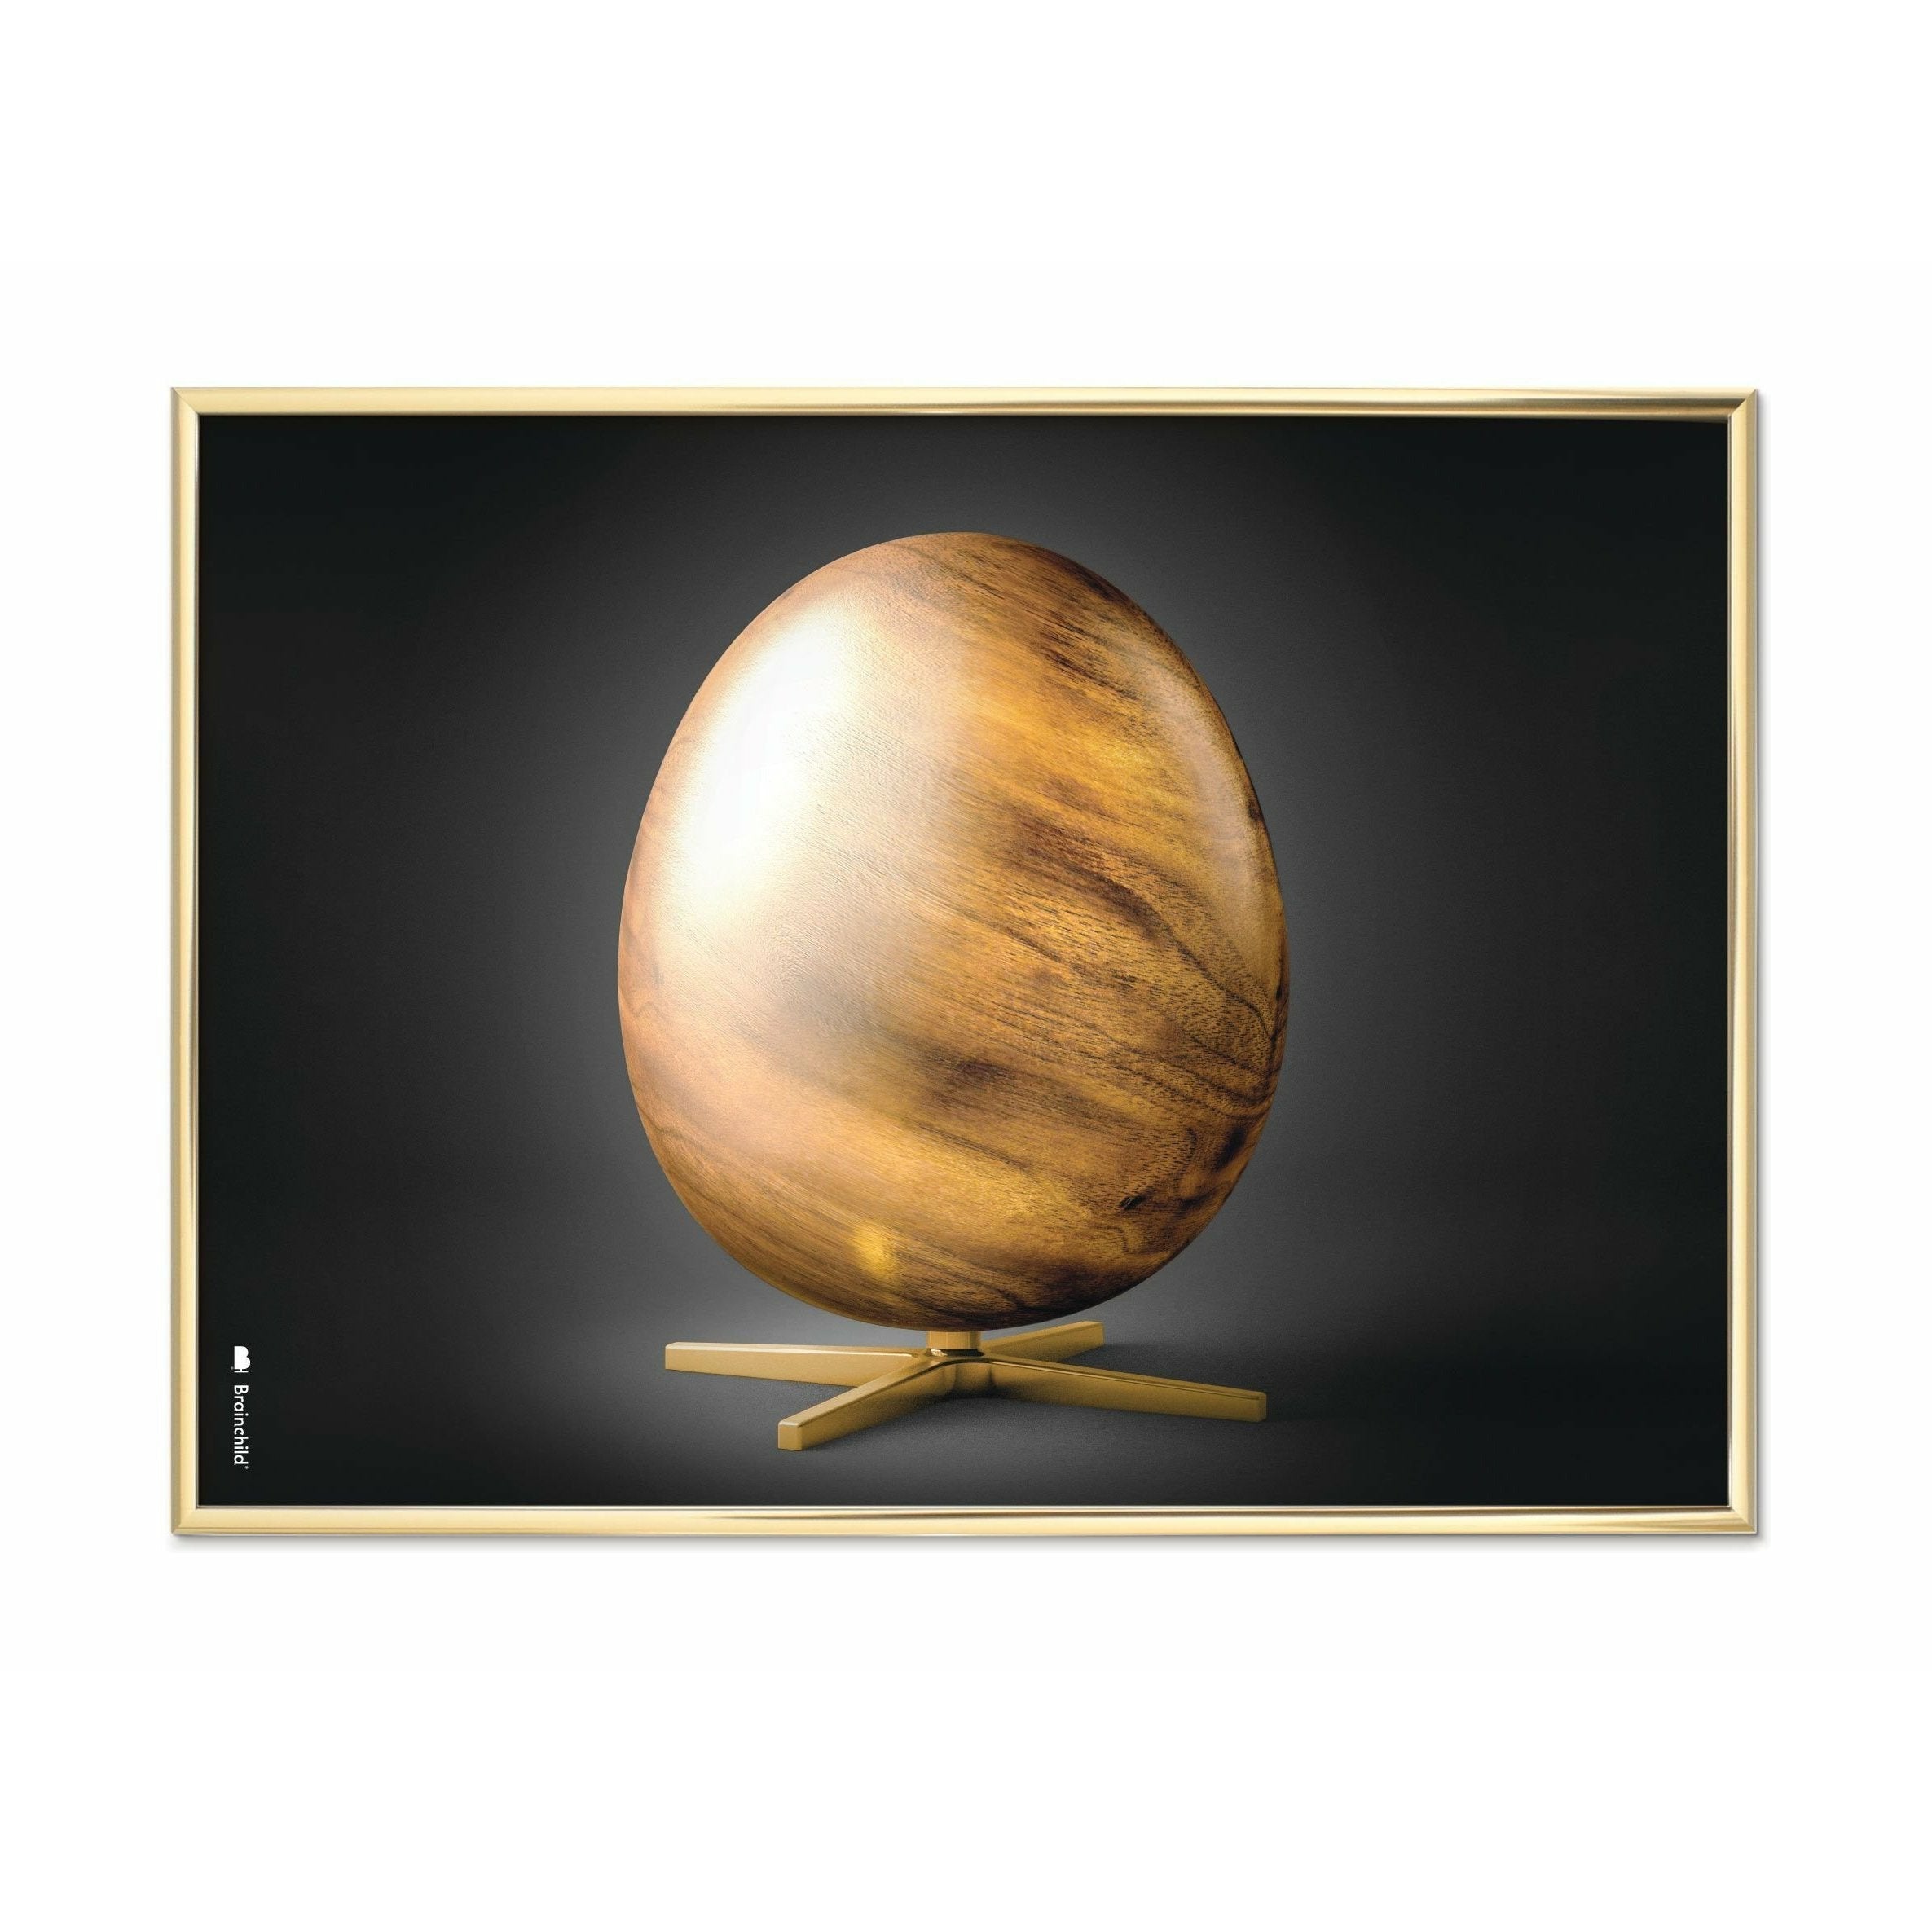 Brainchild Egg Cross Format Poster, Brass Colored Frame 70 X100 Cm, Black